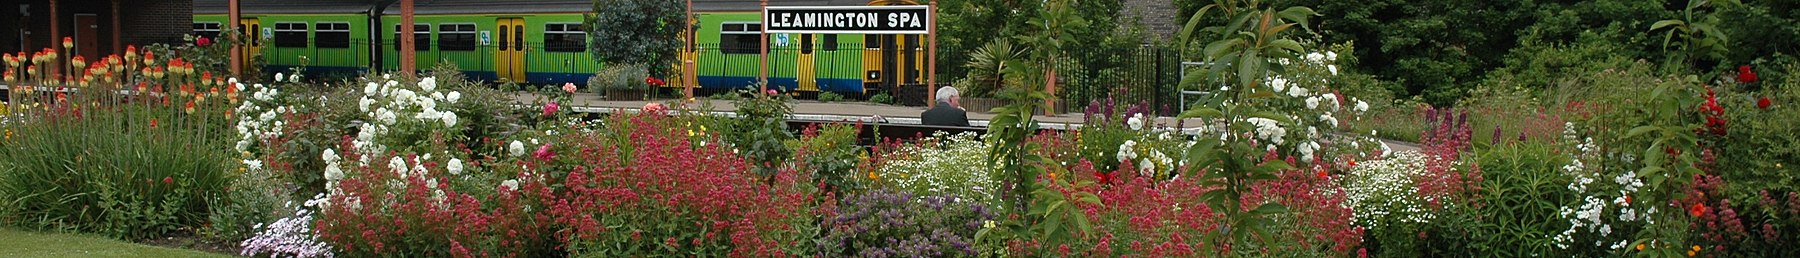 Leamington Spa banner Station Garden.JPG